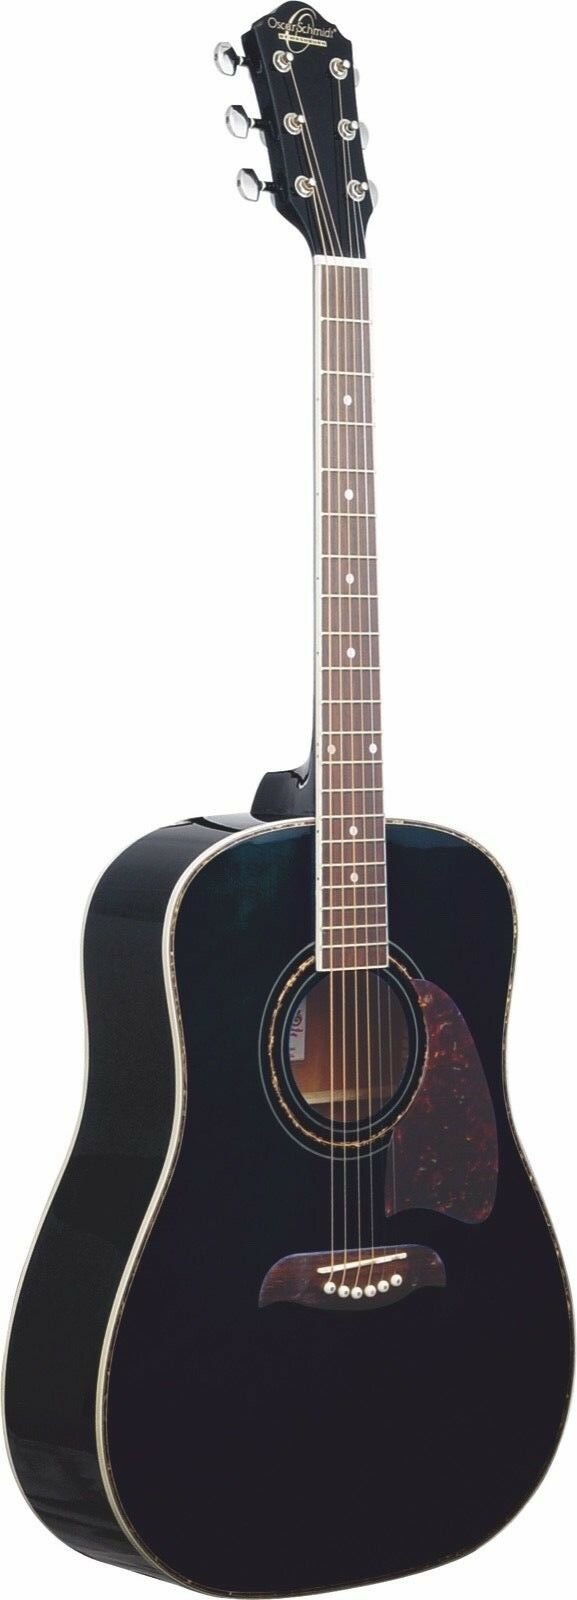 Oscar Schmidt OG2 Dreadnought Acoustic Guitar Black - OG2B